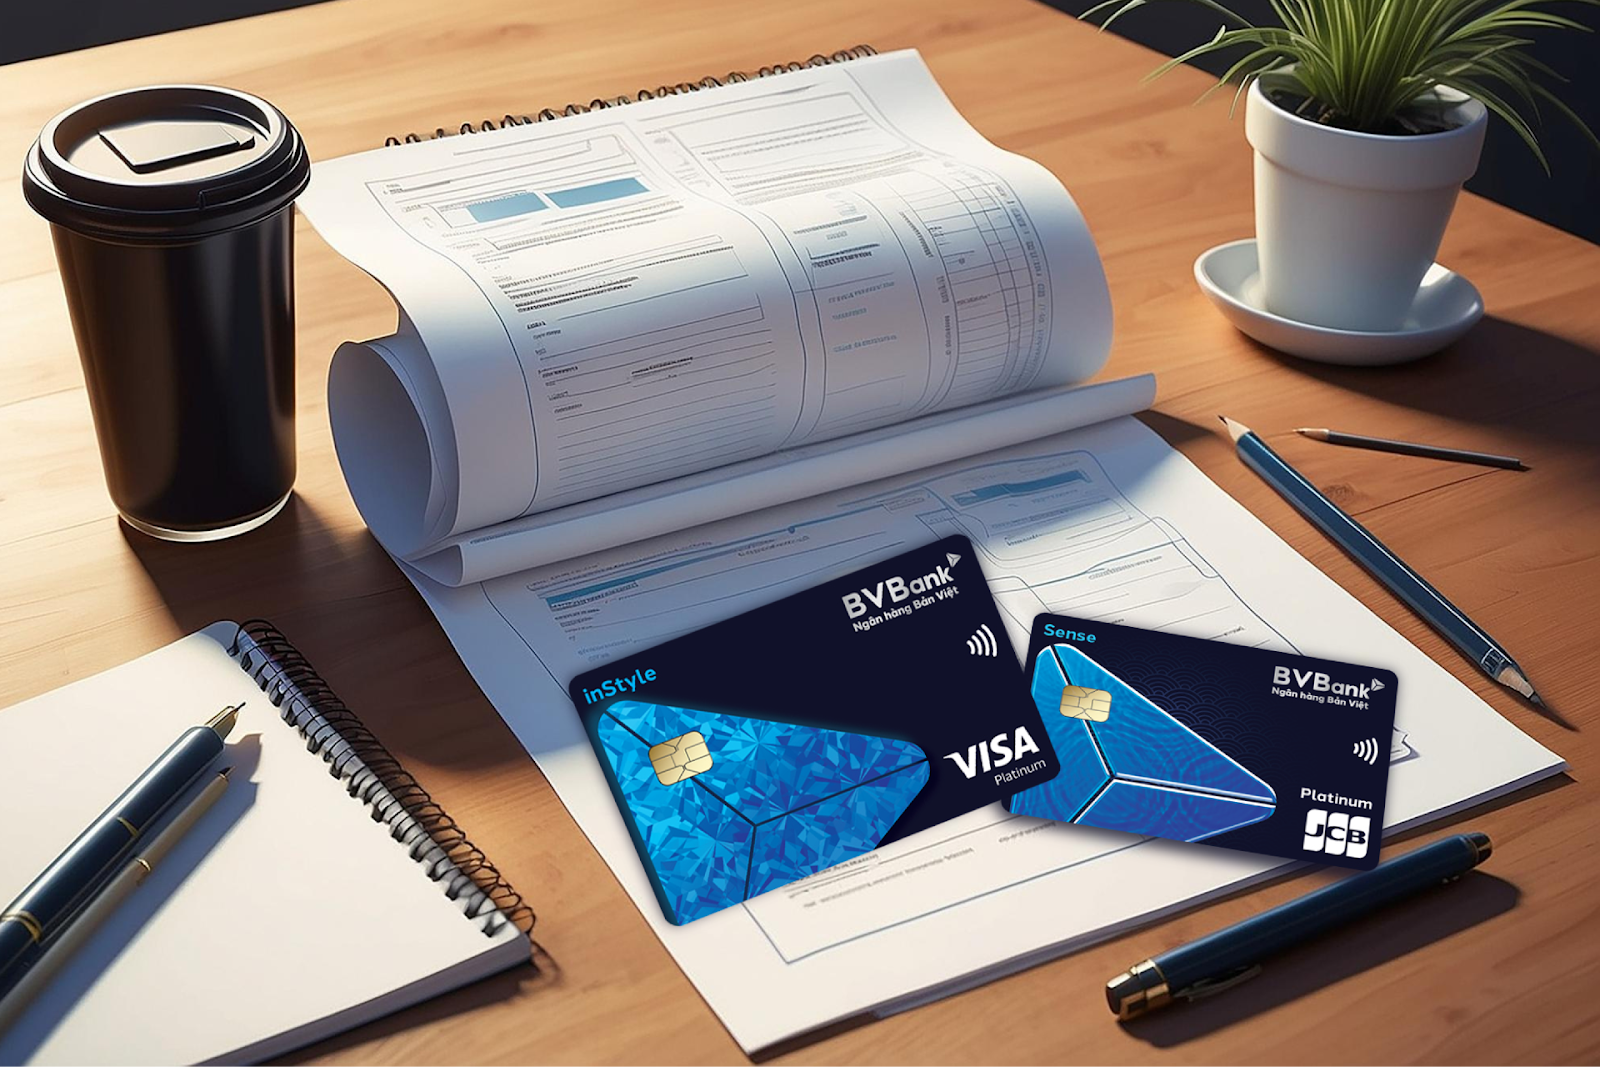 Tìm hiểu về cách sao kê thẻ tín dụng hiệu quả nhất